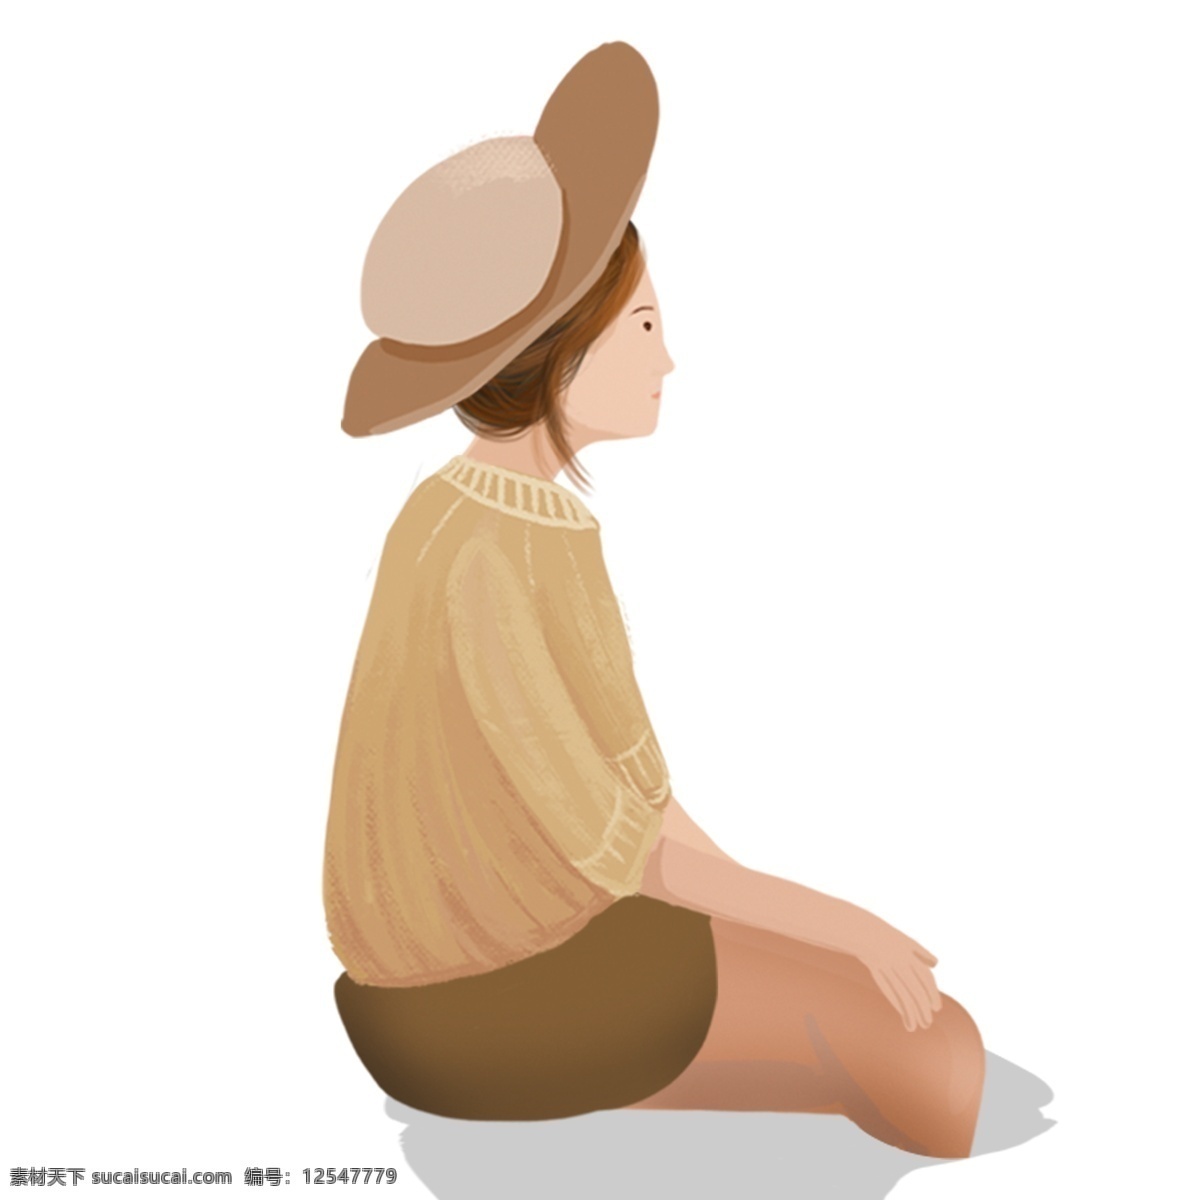 插画 人物 小女孩 休息 棕色衣服 女孩 卡通 彩色 小清新 创意 手绘 绘画元素 现代 简约 装饰 图案